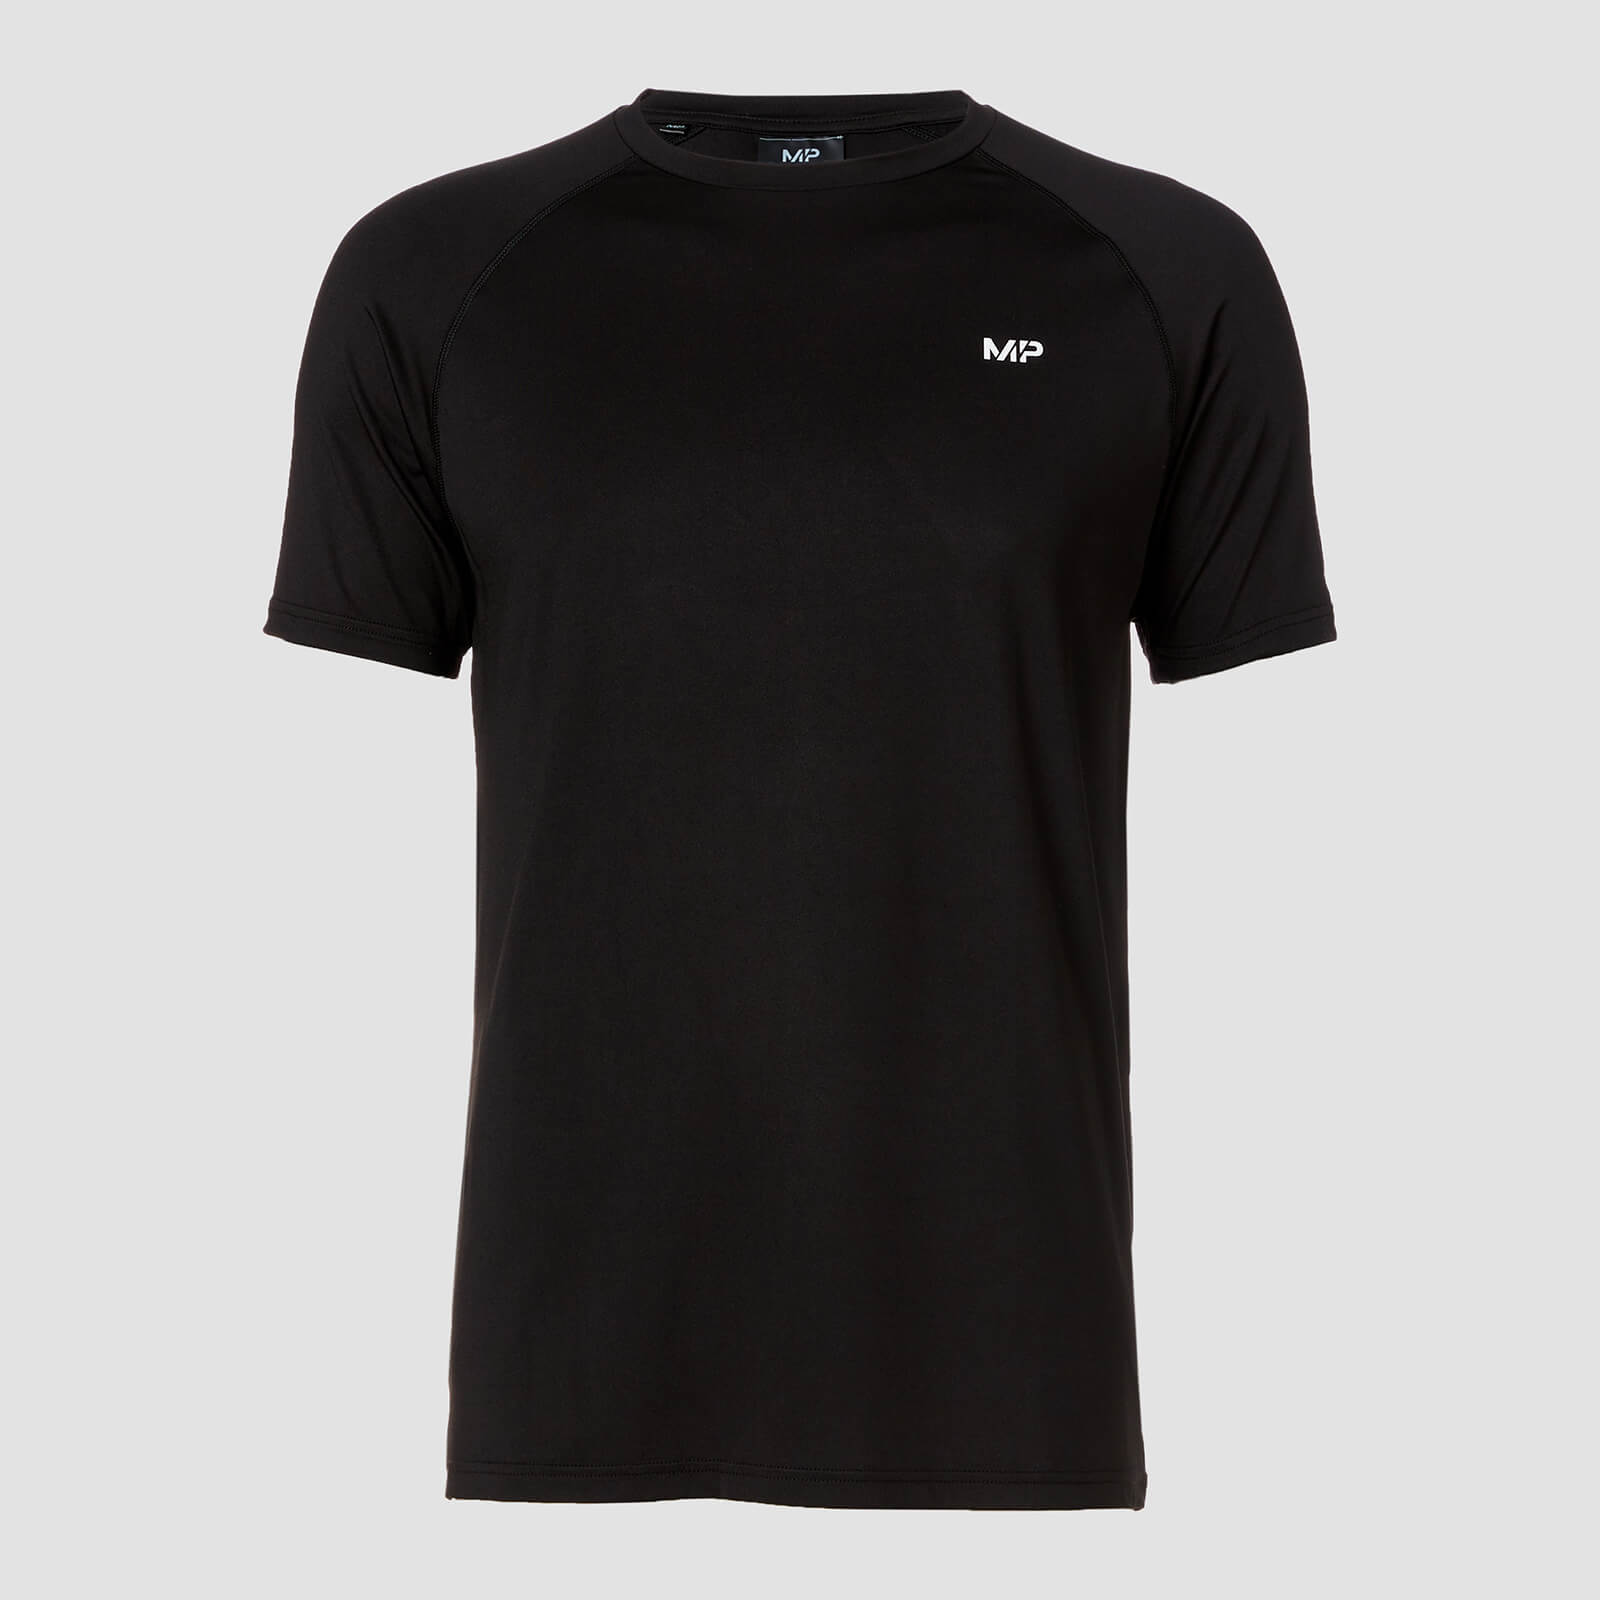 Mp pánské tréninkové tričko s krátkým rukávem – Černé - XS